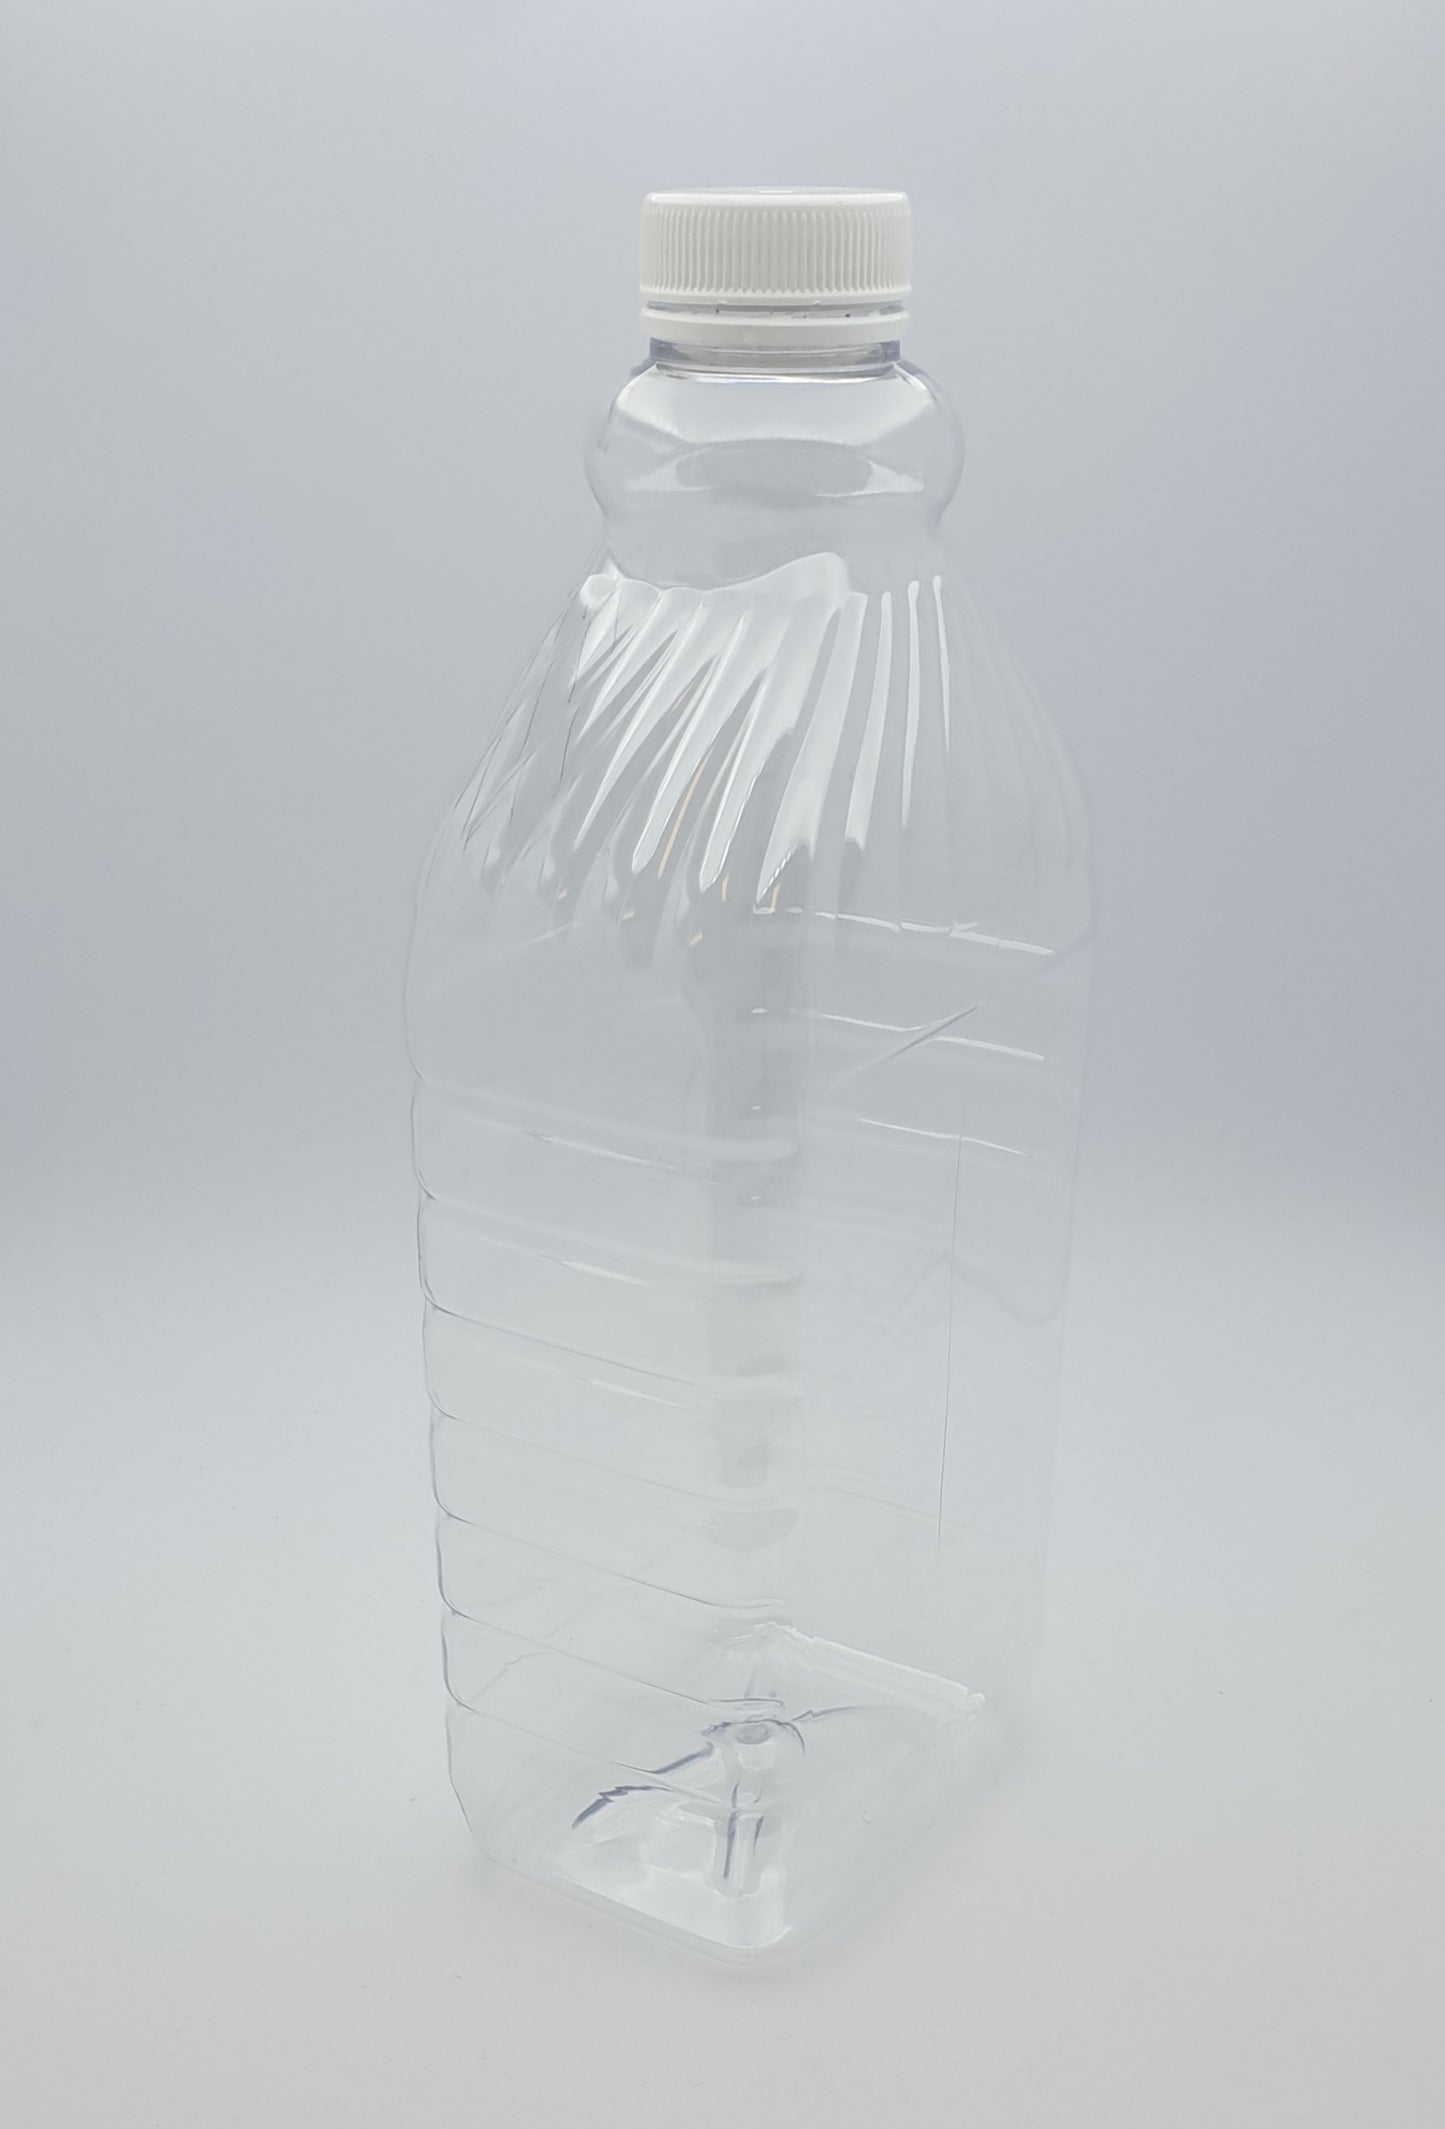 2L Cordial PET Swirl Top Bottle with White Cap - $1.14c per unit (Bottle/Capcombo) - 18 per carton